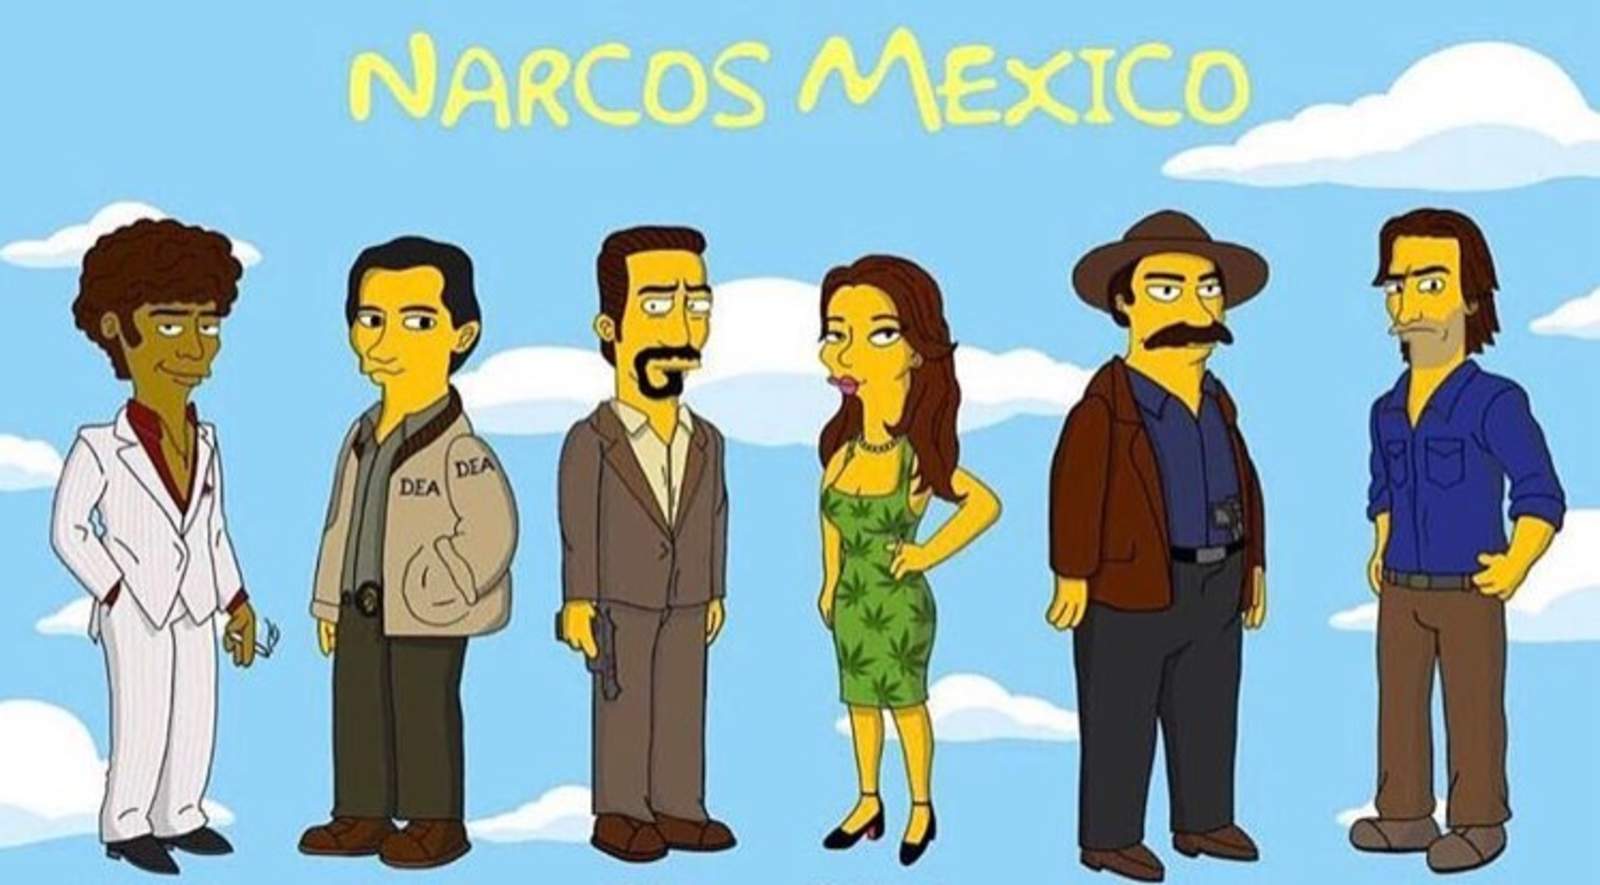 ‘Simpsonizan’ a los personajes de Narcos: México